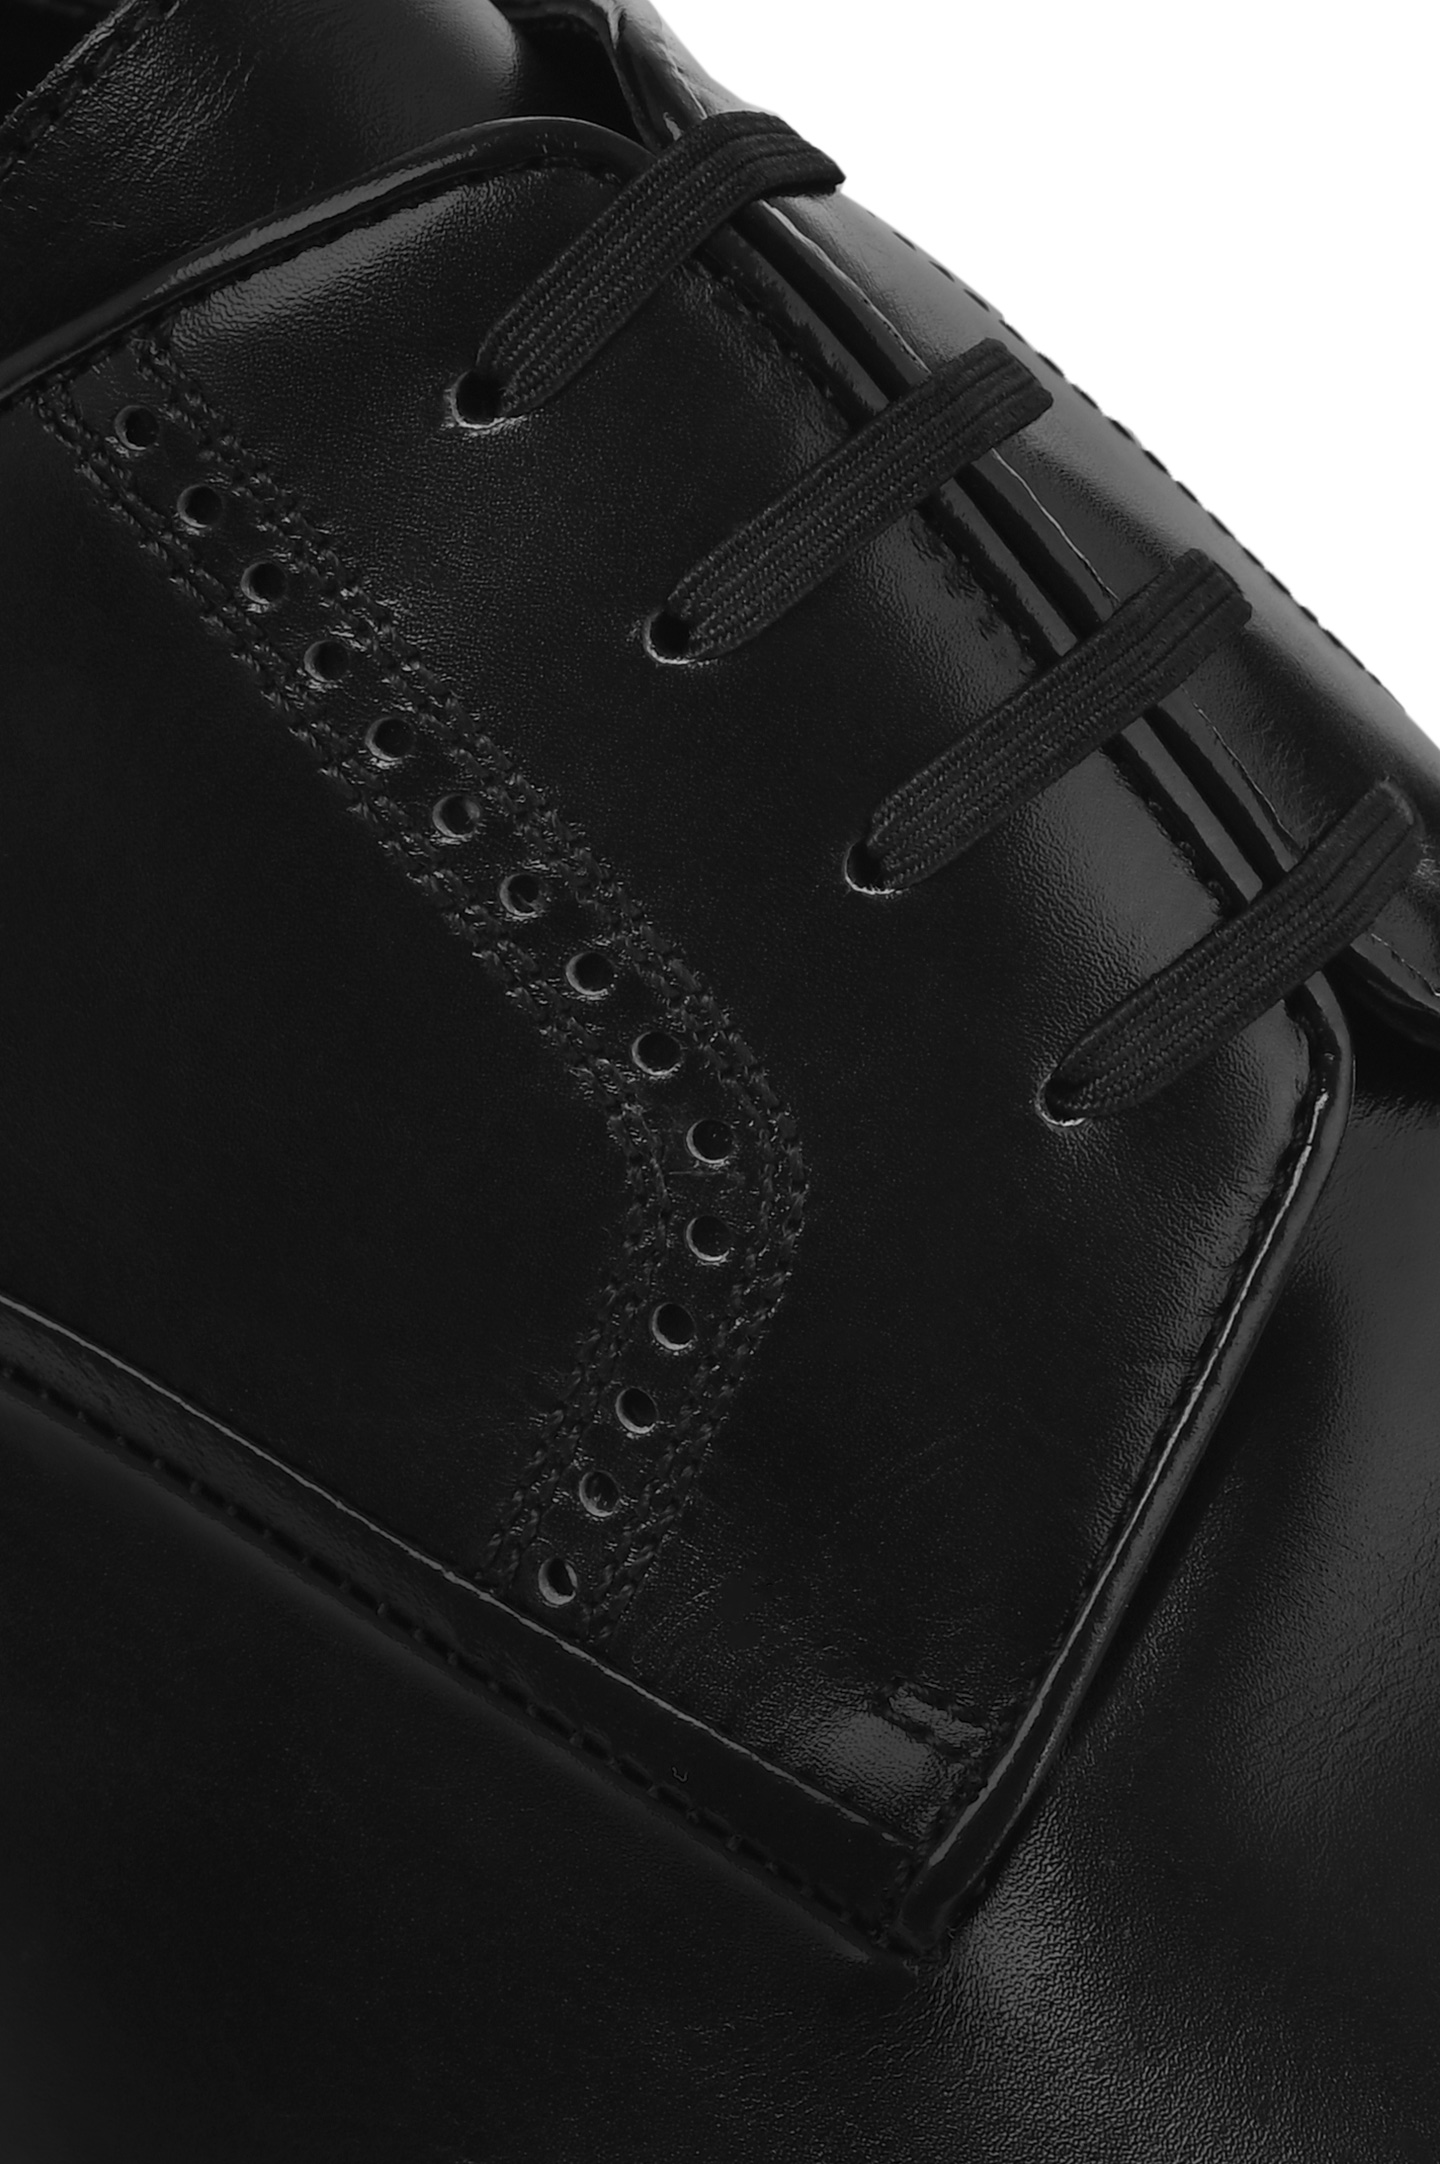 Туфли ARTIOLI 0G6S386/BIS, цвет: Черный, Мужской